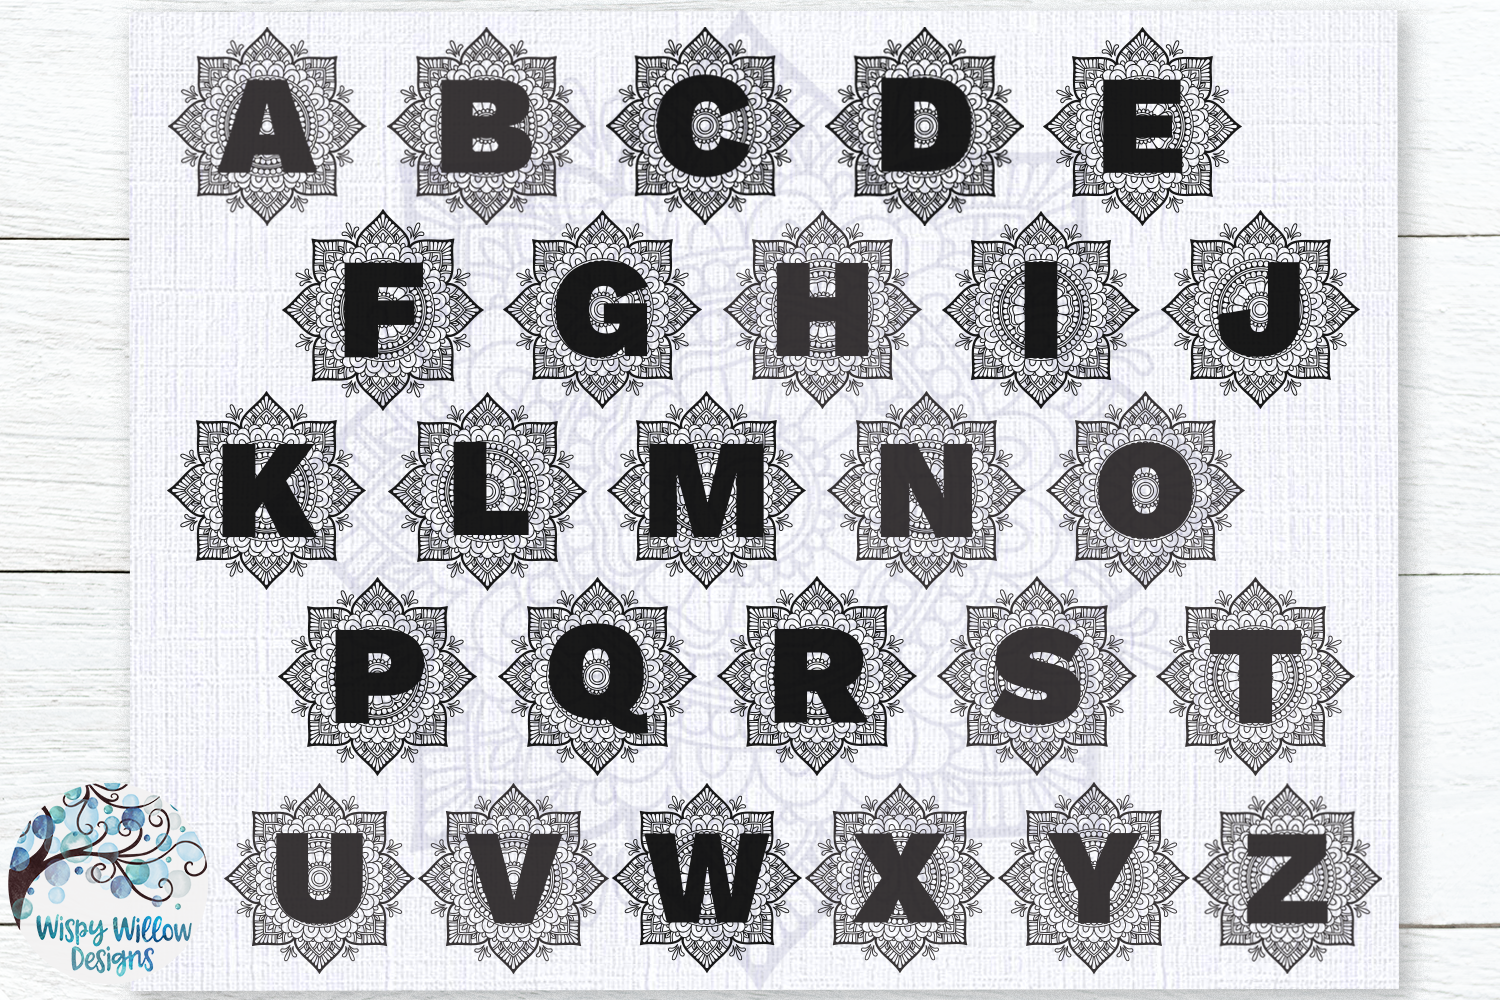 Mandala Alphabet SVG Bundle | A to Z Mandala Letters SVG ...